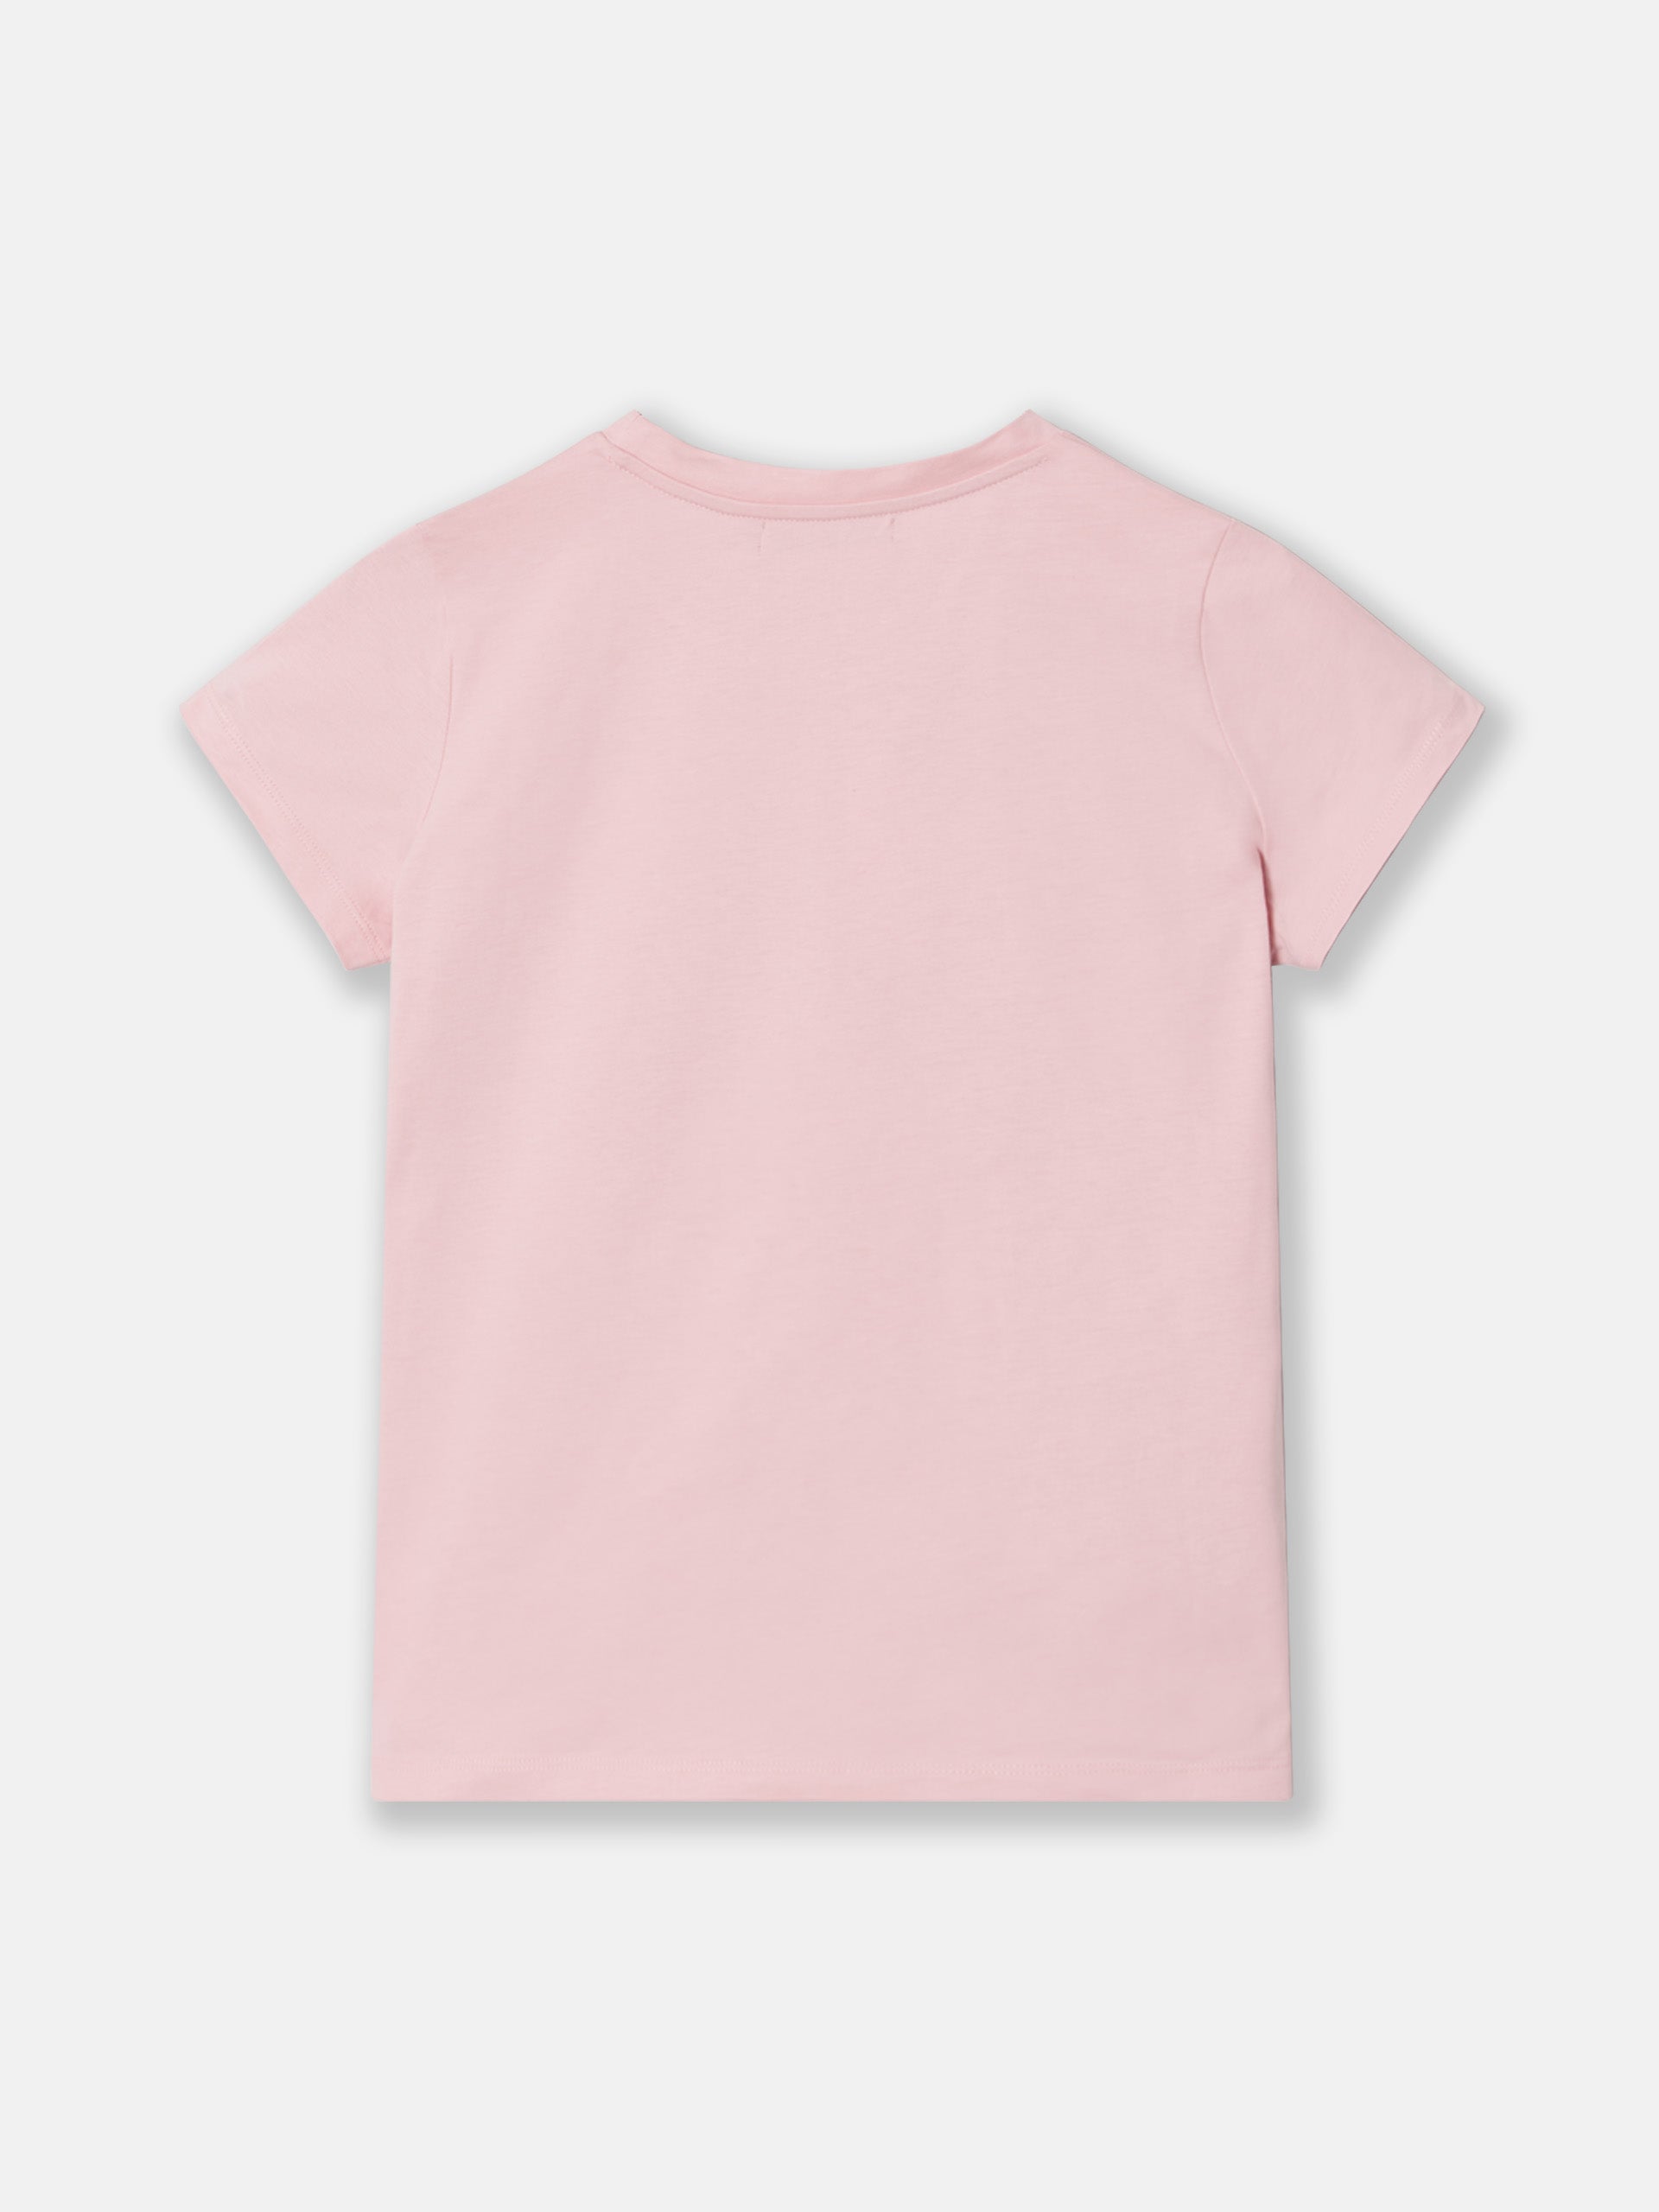 Camiseta woman clasica rosa claro